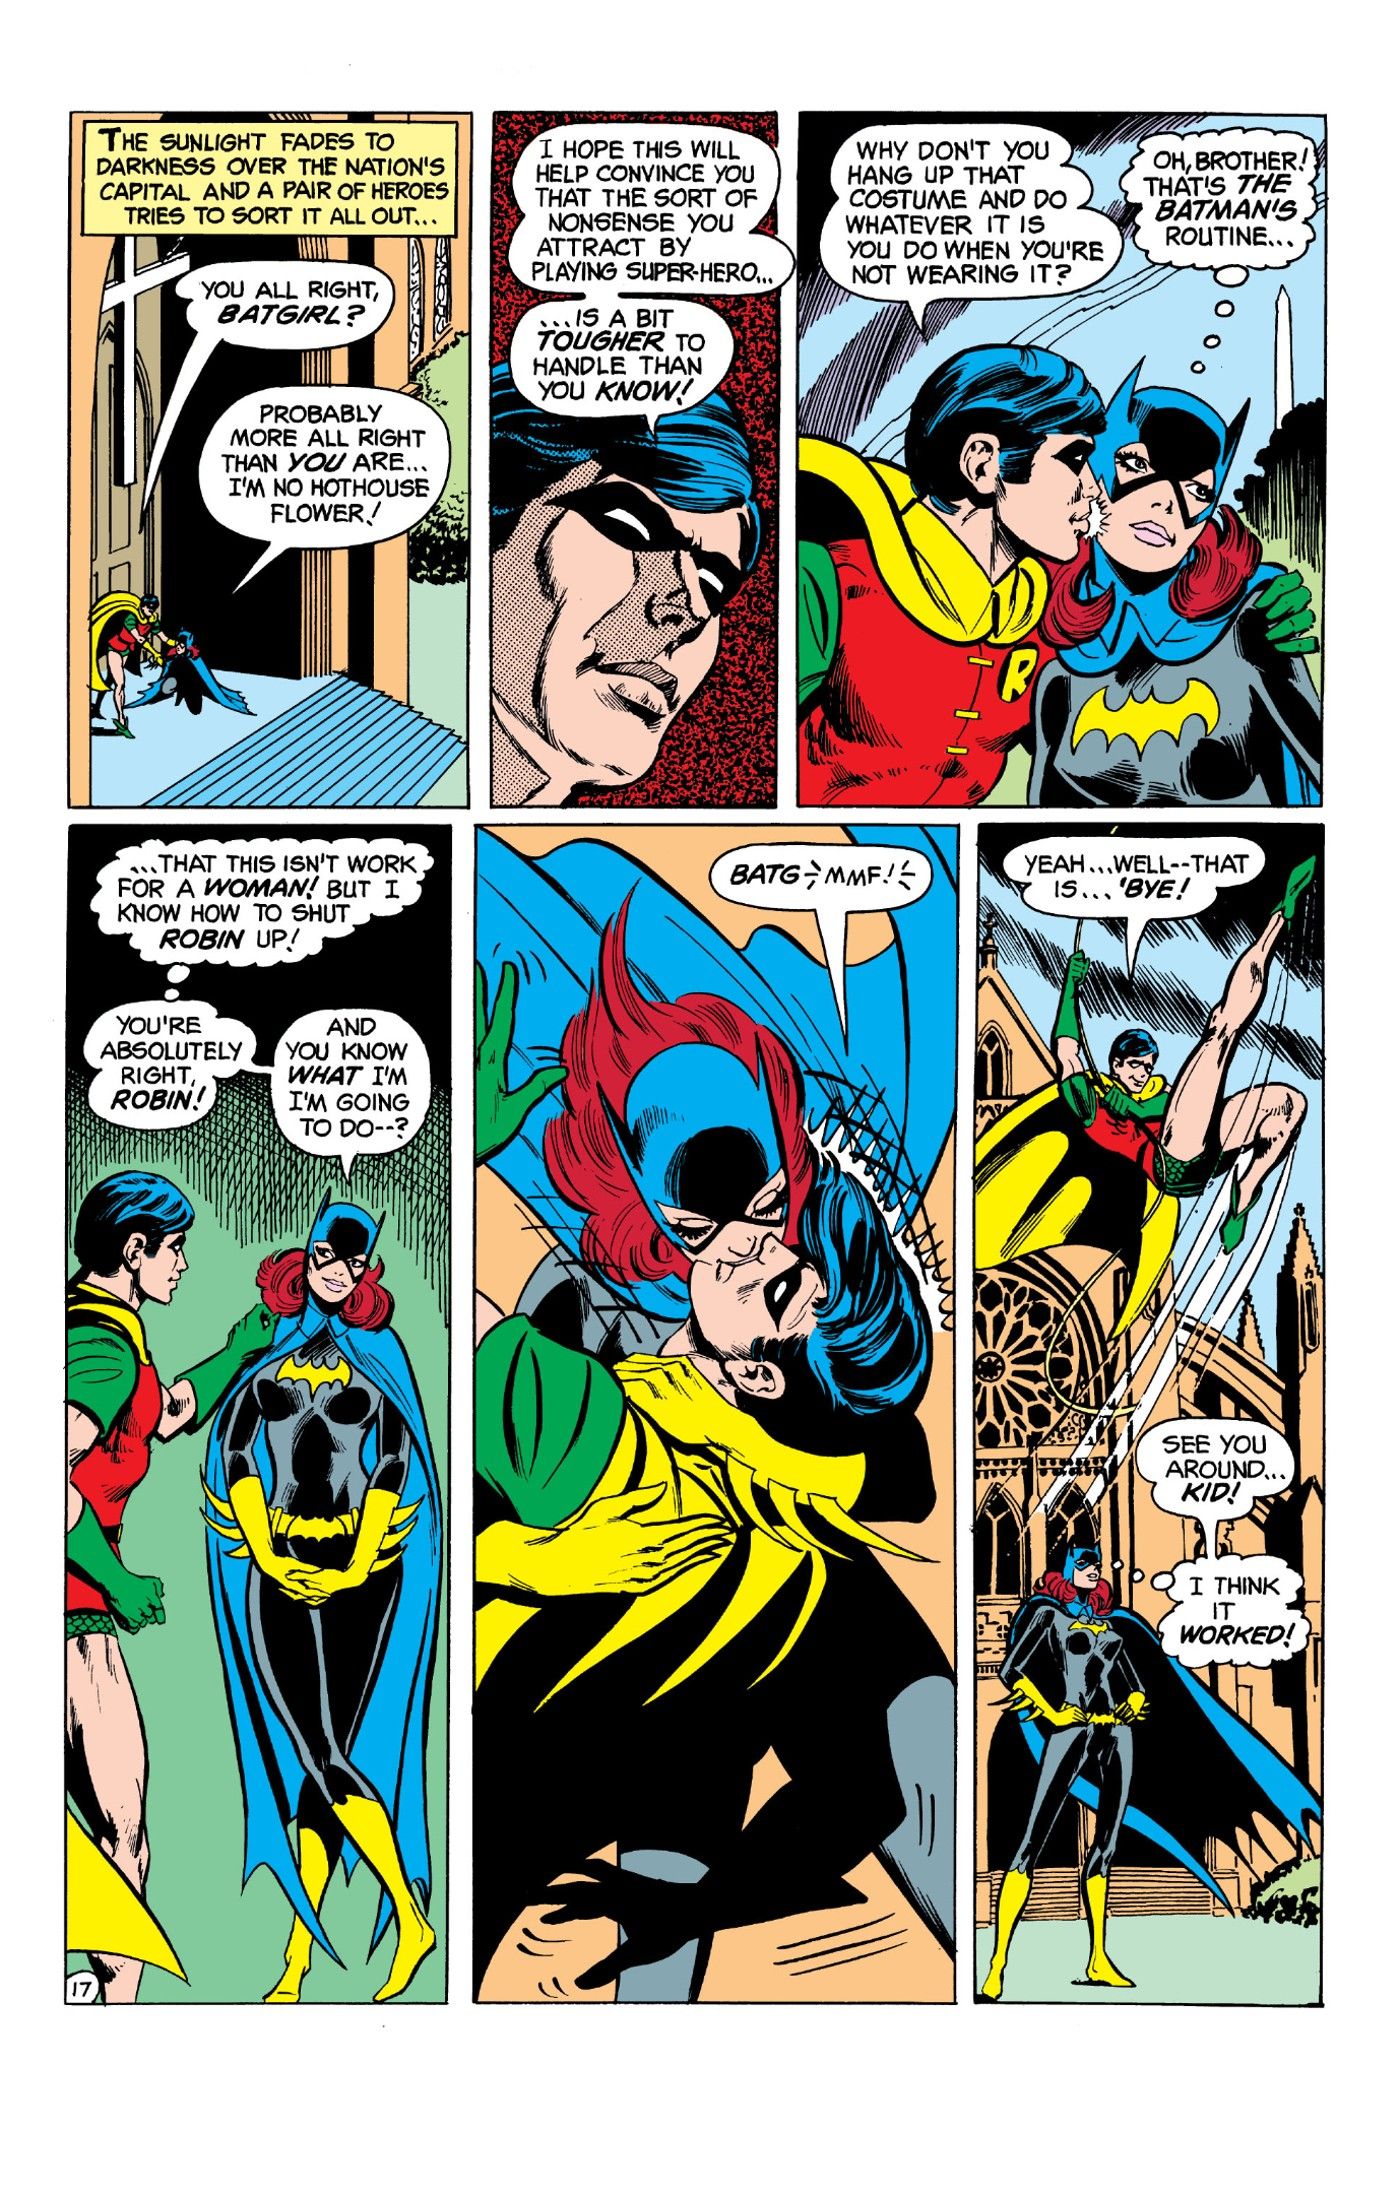 Batgirl choca Robin ao beijá-lo